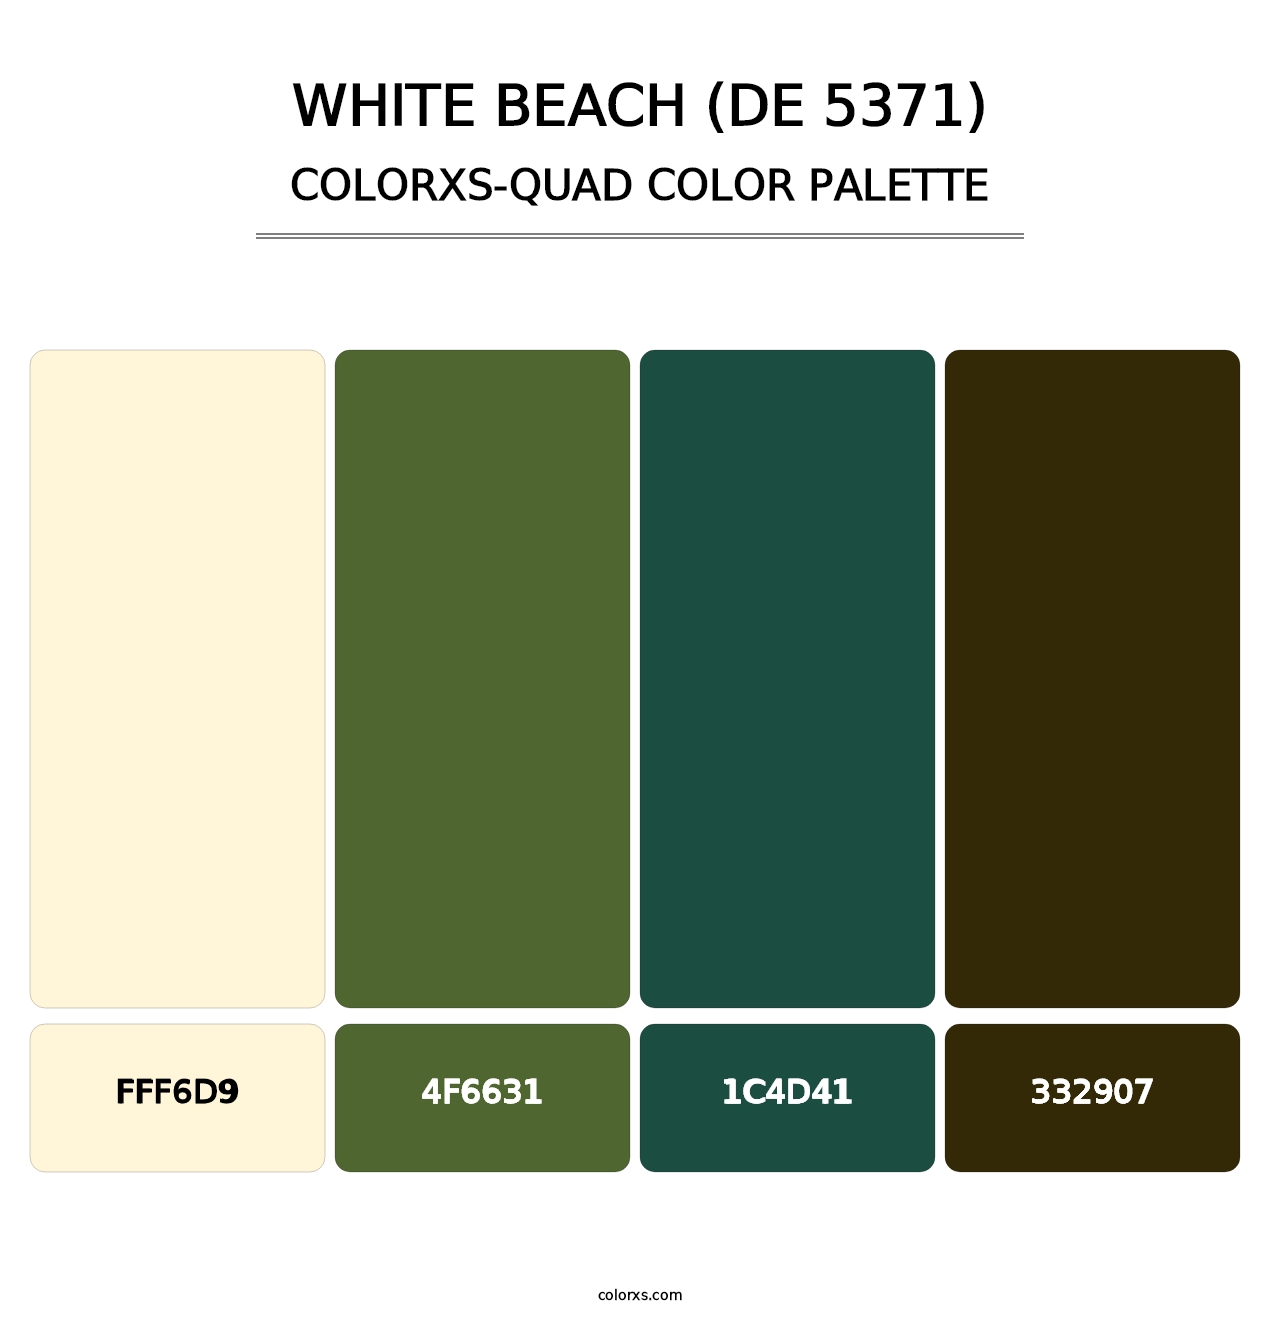 White Beach (DE 5371) - Colorxs Quad Palette